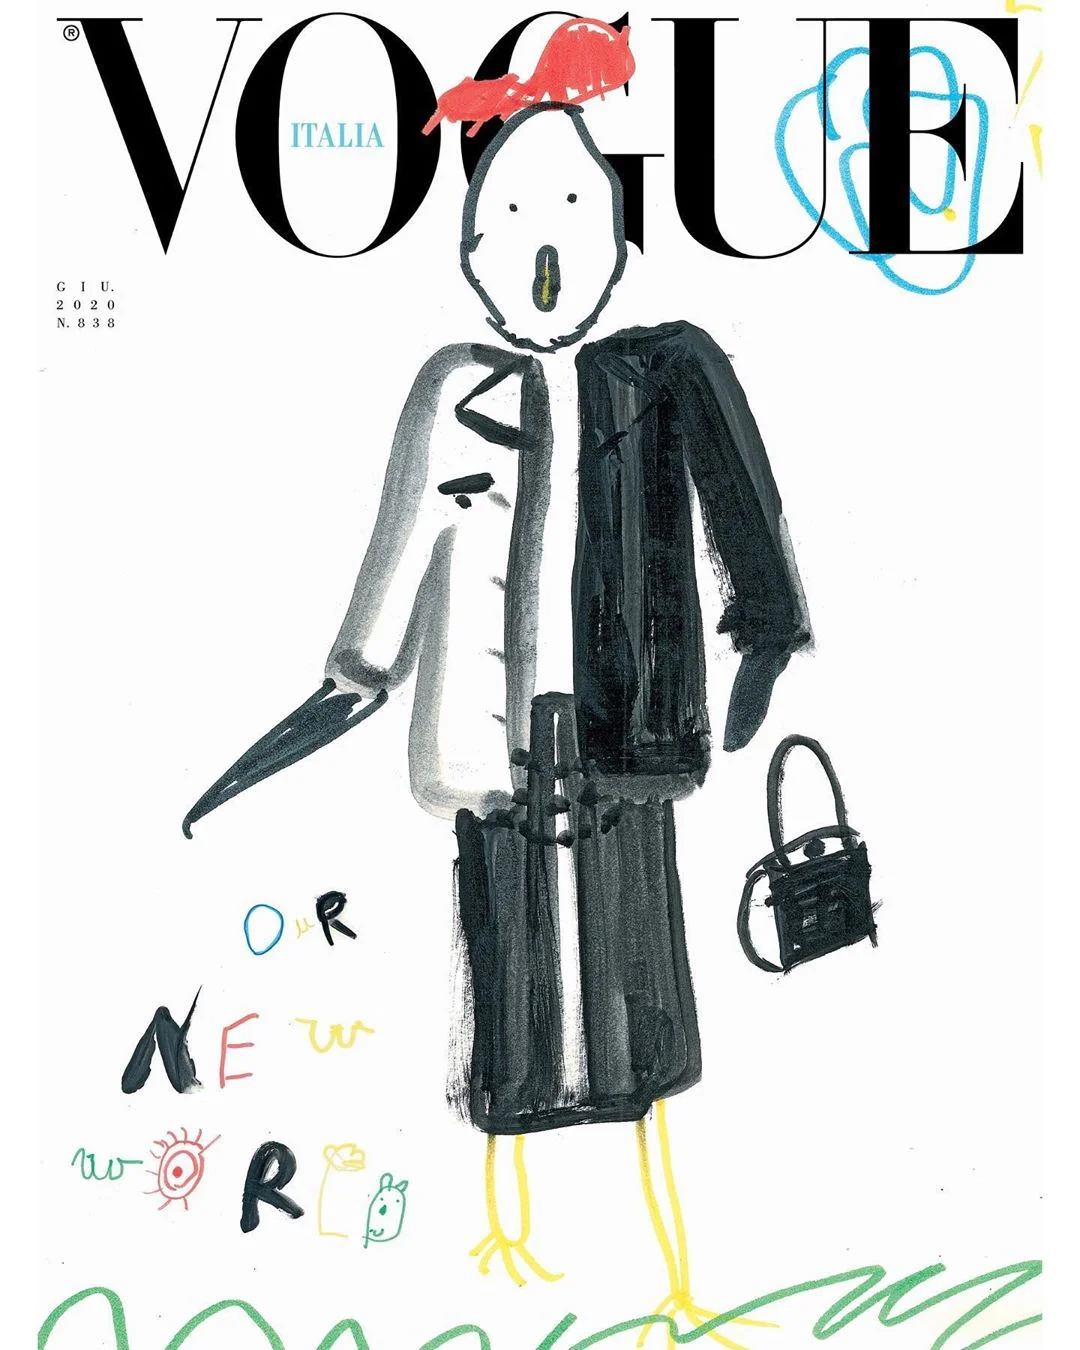 Впервые в истории обложку Vogue украсили детские рисунки - фото 480762